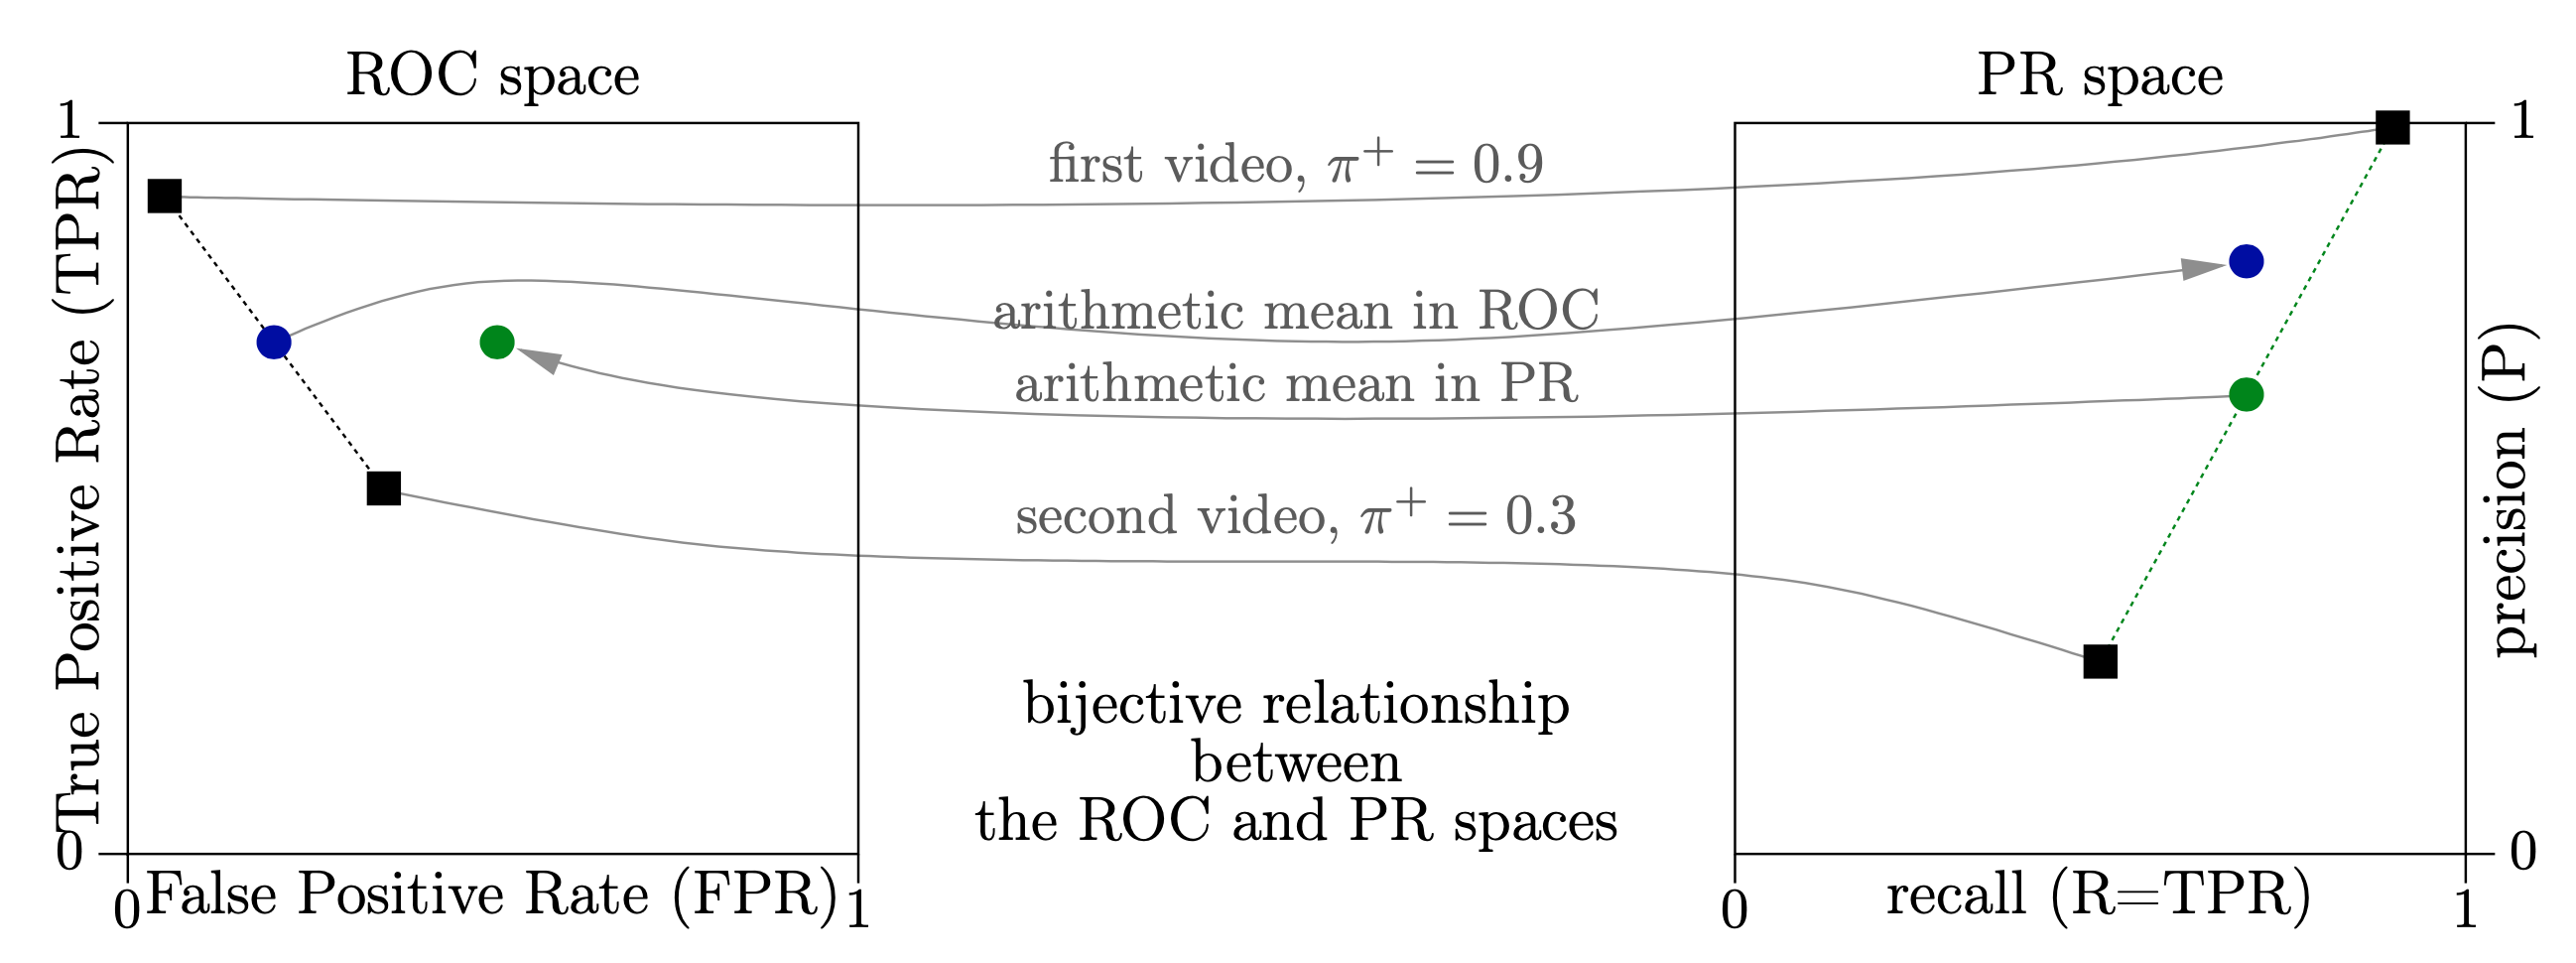 figure images/ROC-vs-PR.png